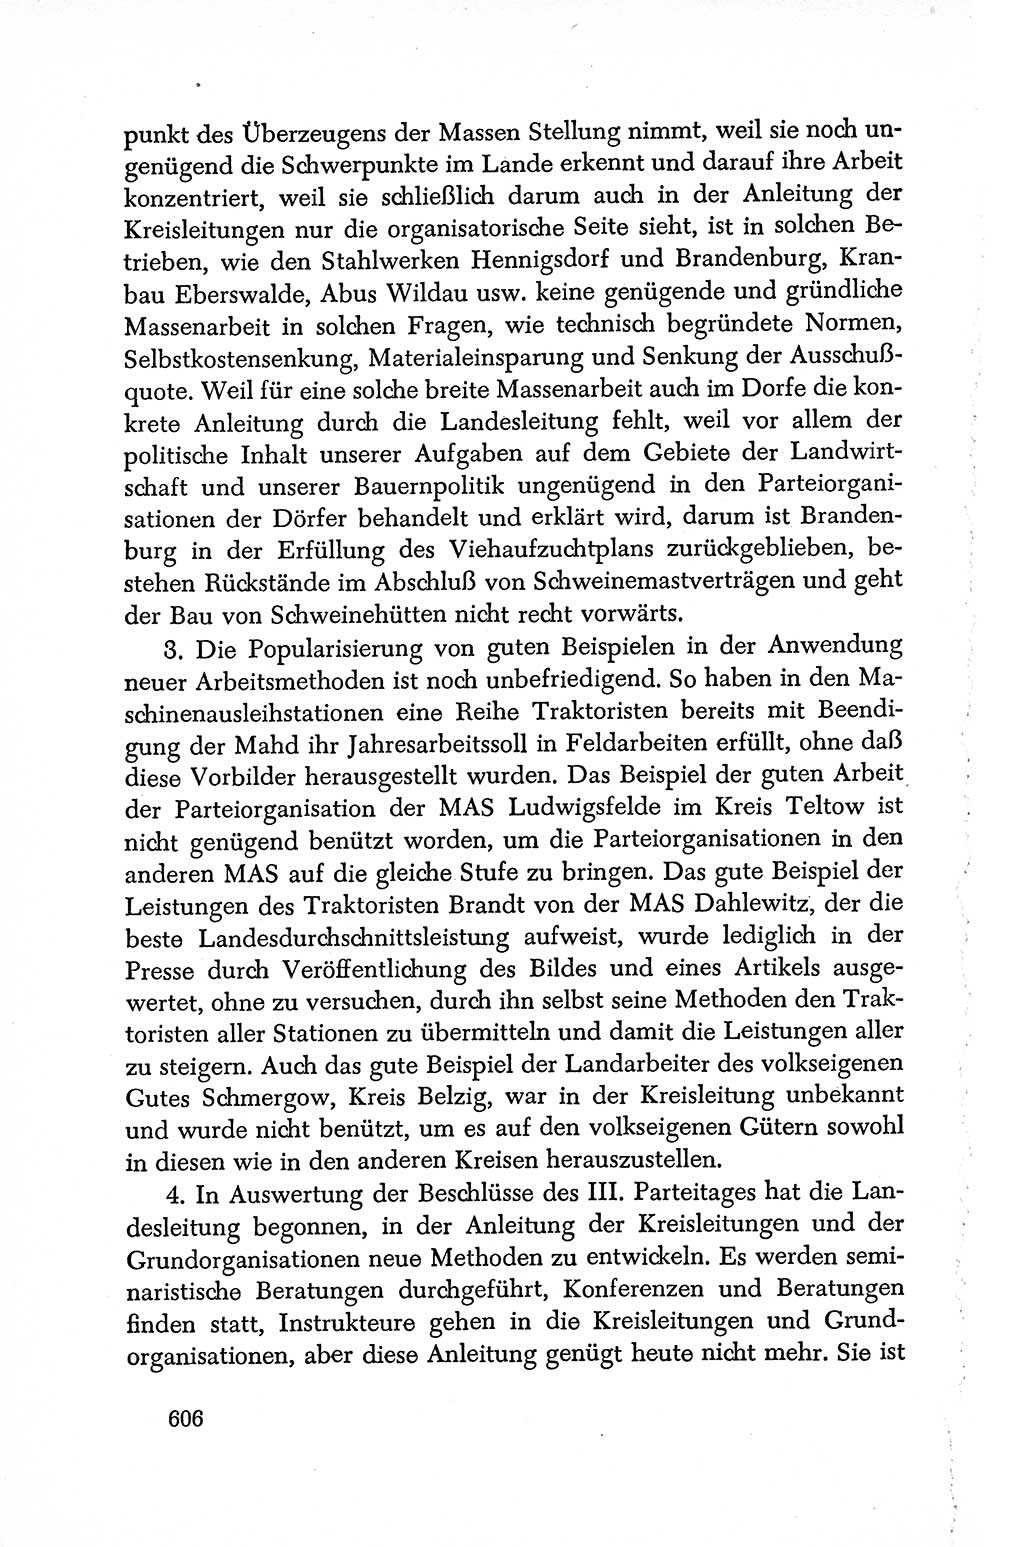 Dokumente der Sozialistischen Einheitspartei Deutschlands (SED) [Deutsche Demokratische Republik (DDR)] 1950-1952, Seite 606 (Dok. SED DDR 1950-1952, S. 606)